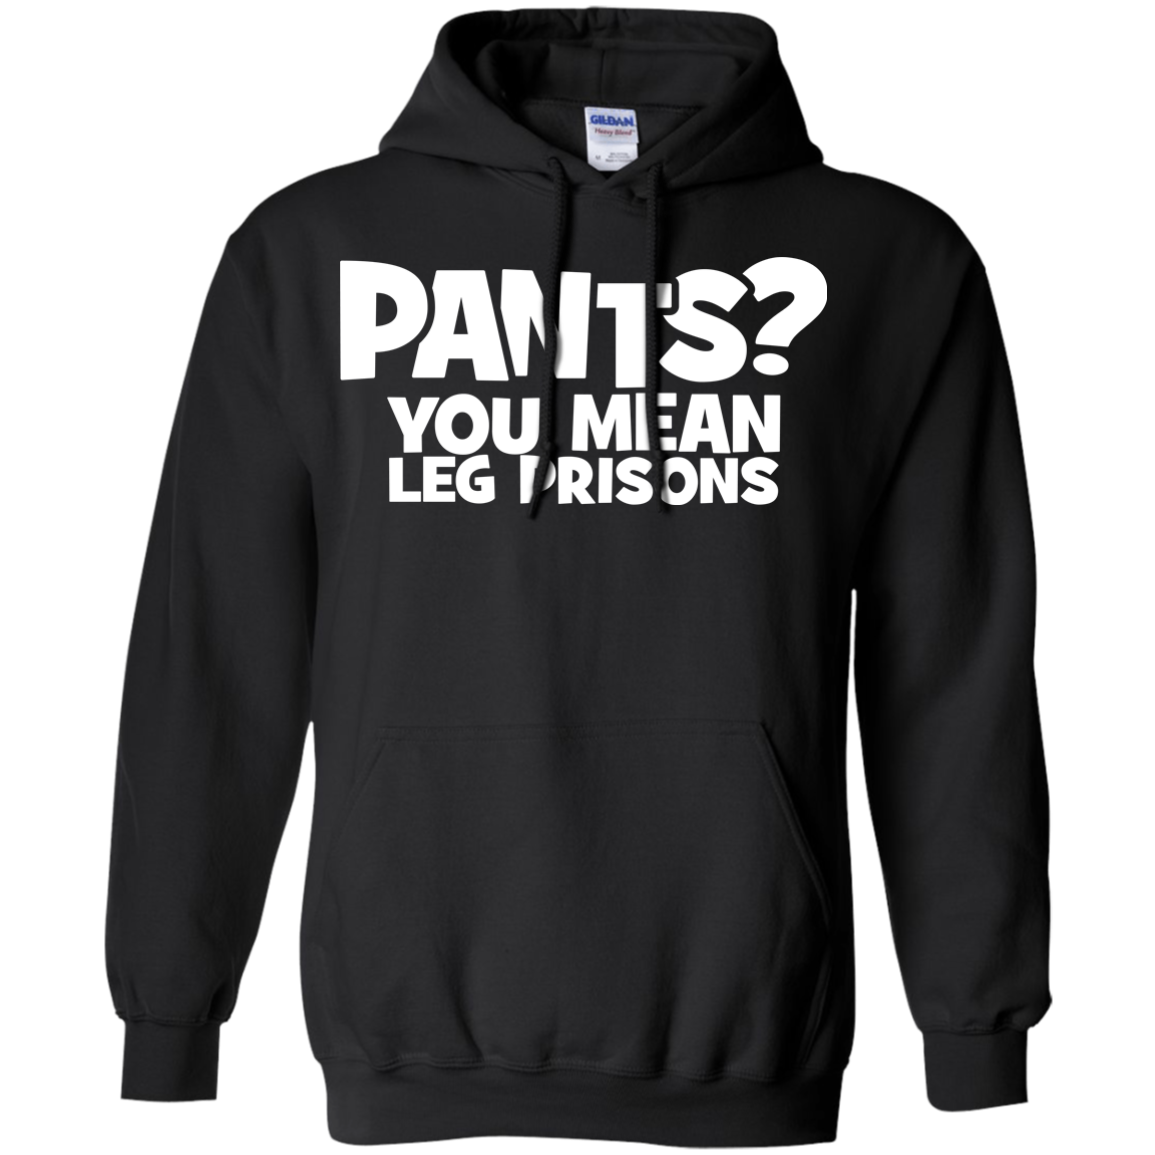 Pants? You Mean Leg Prison